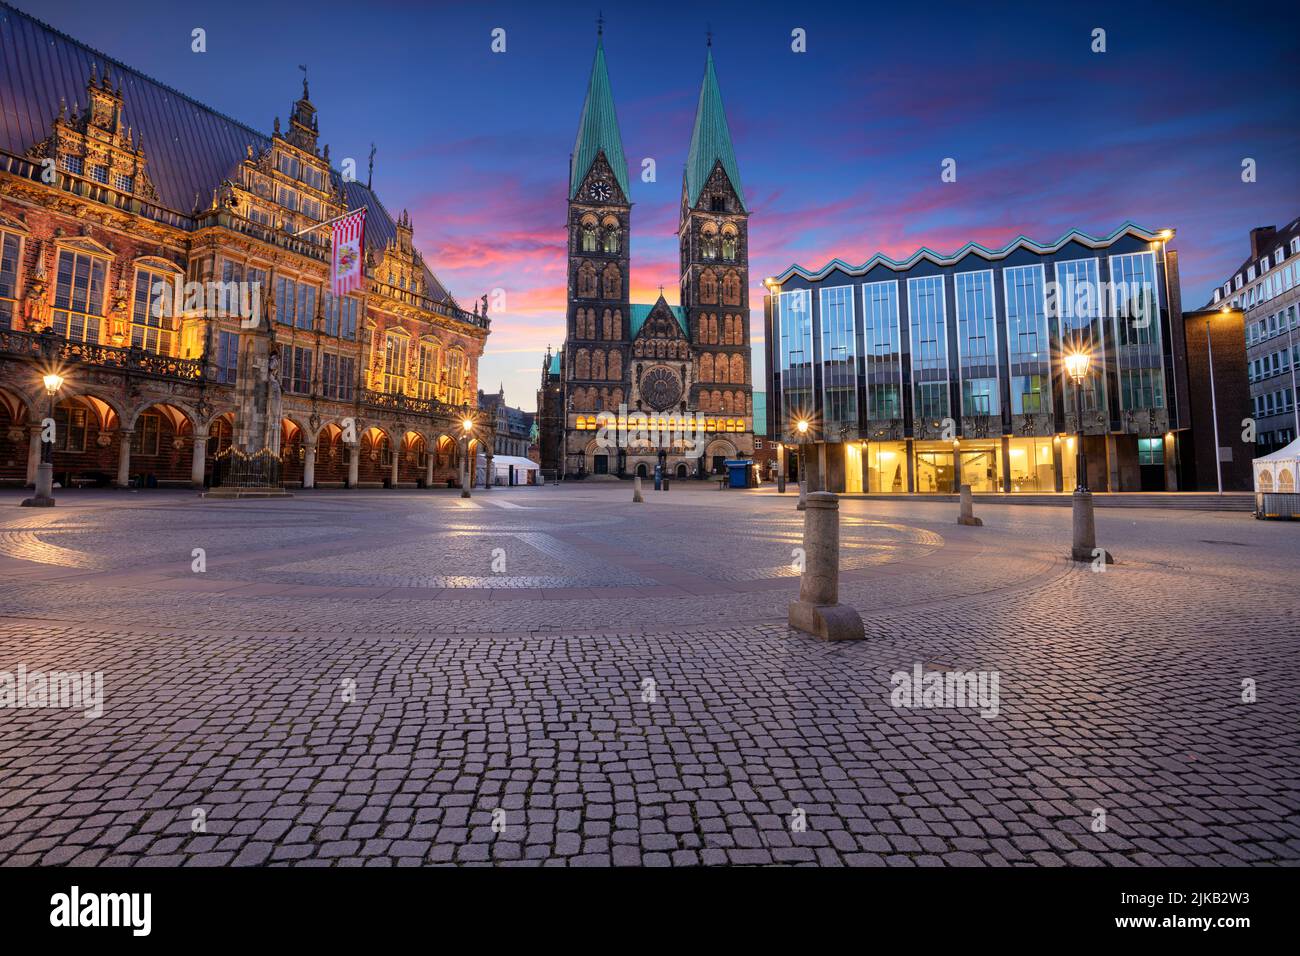 Brême, Allemagne. Image de paysage urbain de la ville hanséatique de Brême, Allemagne avec place du marché historique, cathédrale de Brême et hôtel de ville au lever du soleil d'été. Banque D'Images